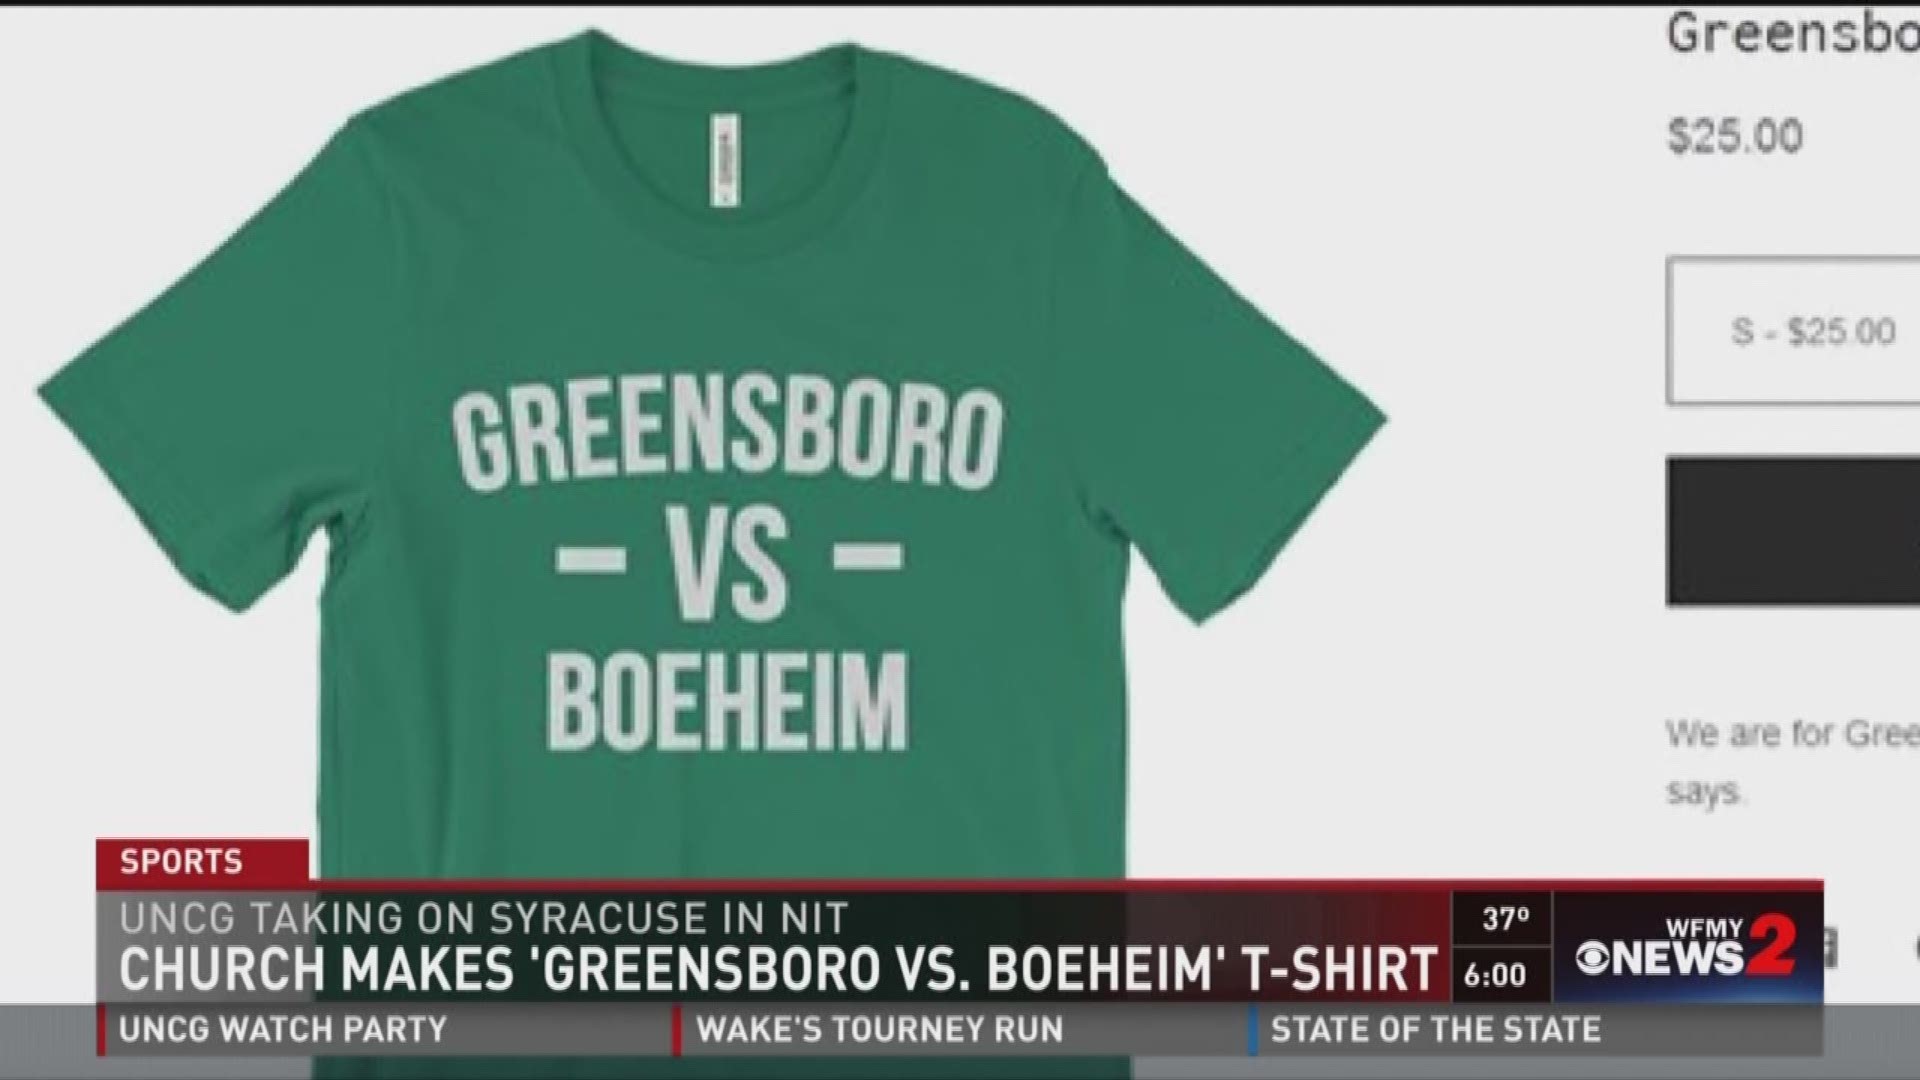 Church Makes Greensboro Vs. Boeheim T-Shirt